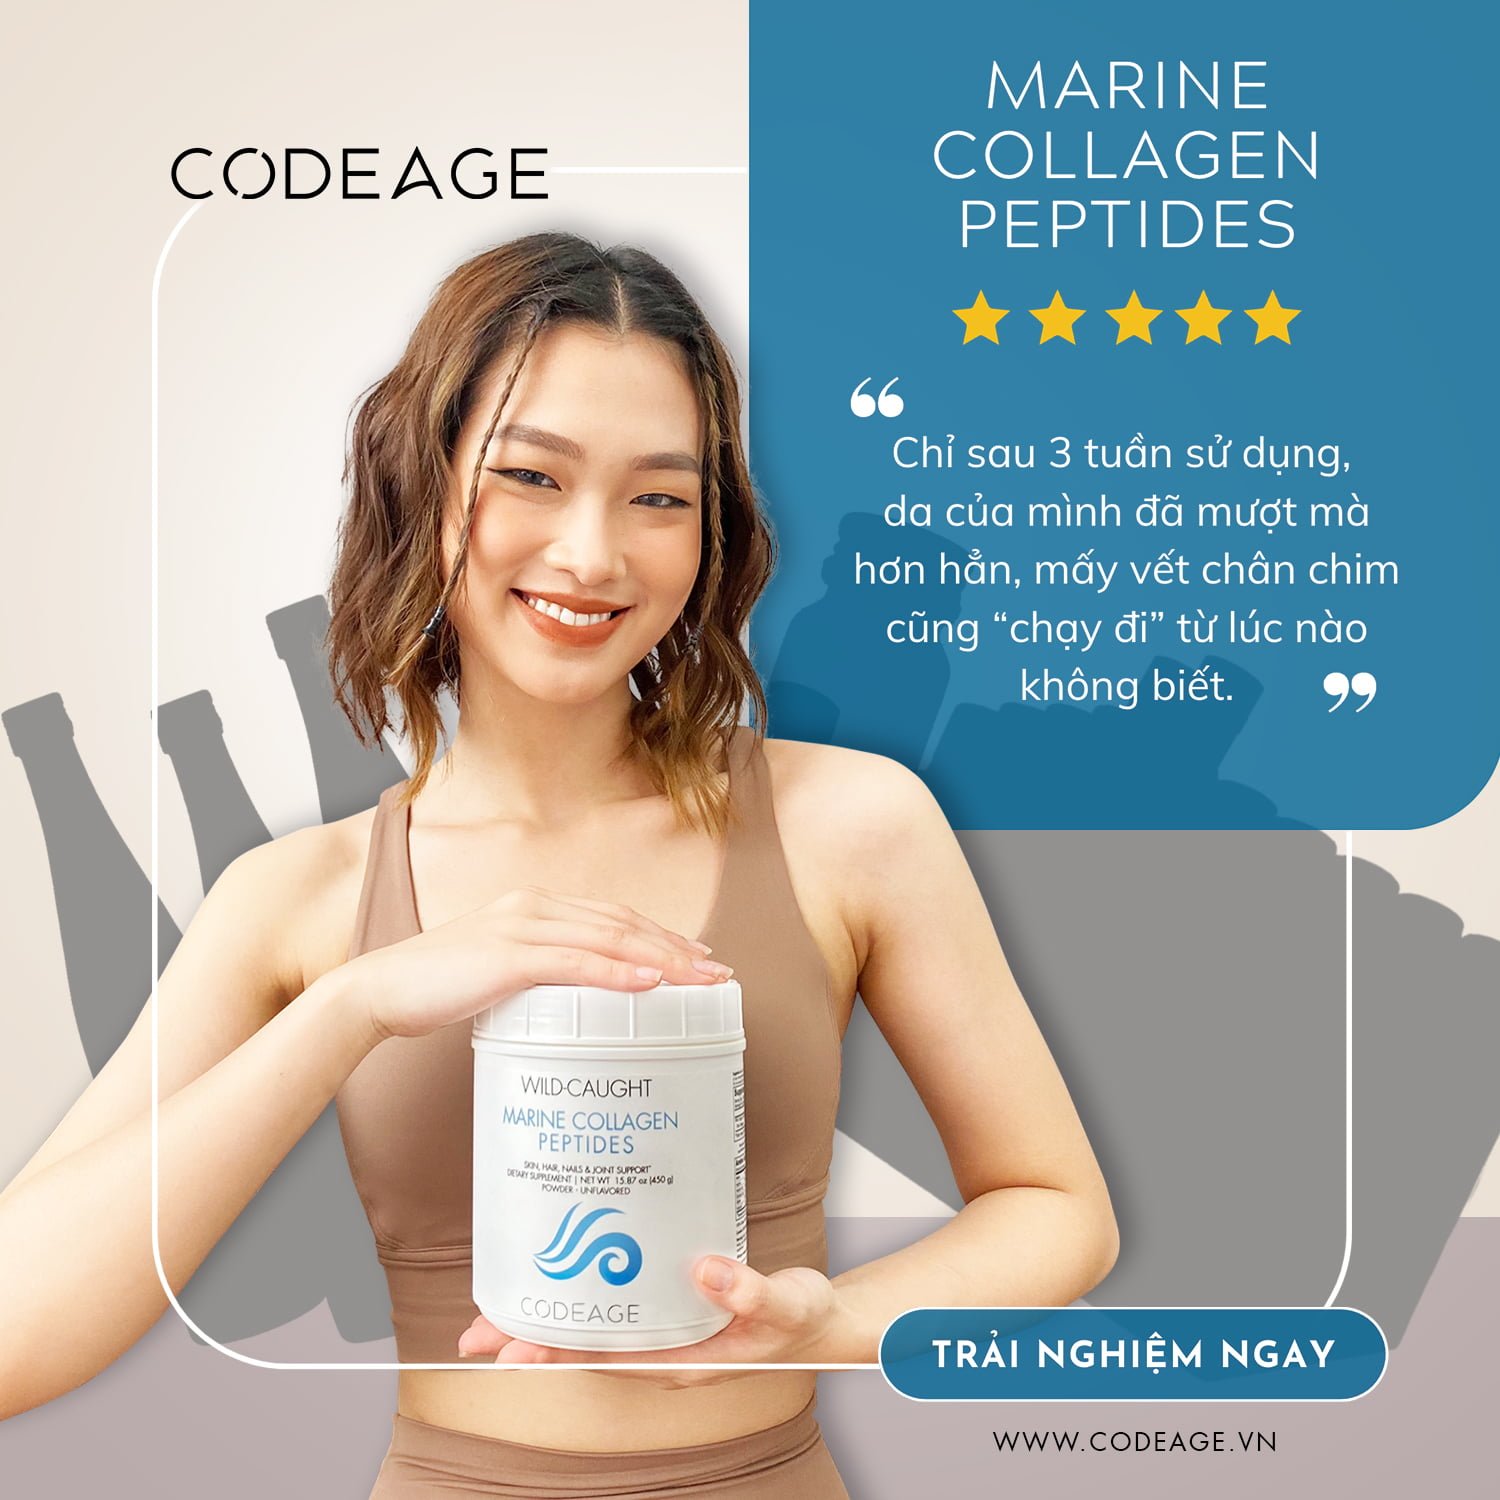 Marine Collagen Peptides của Codeage được đánh giá cao trong việc chăm sóc làn da